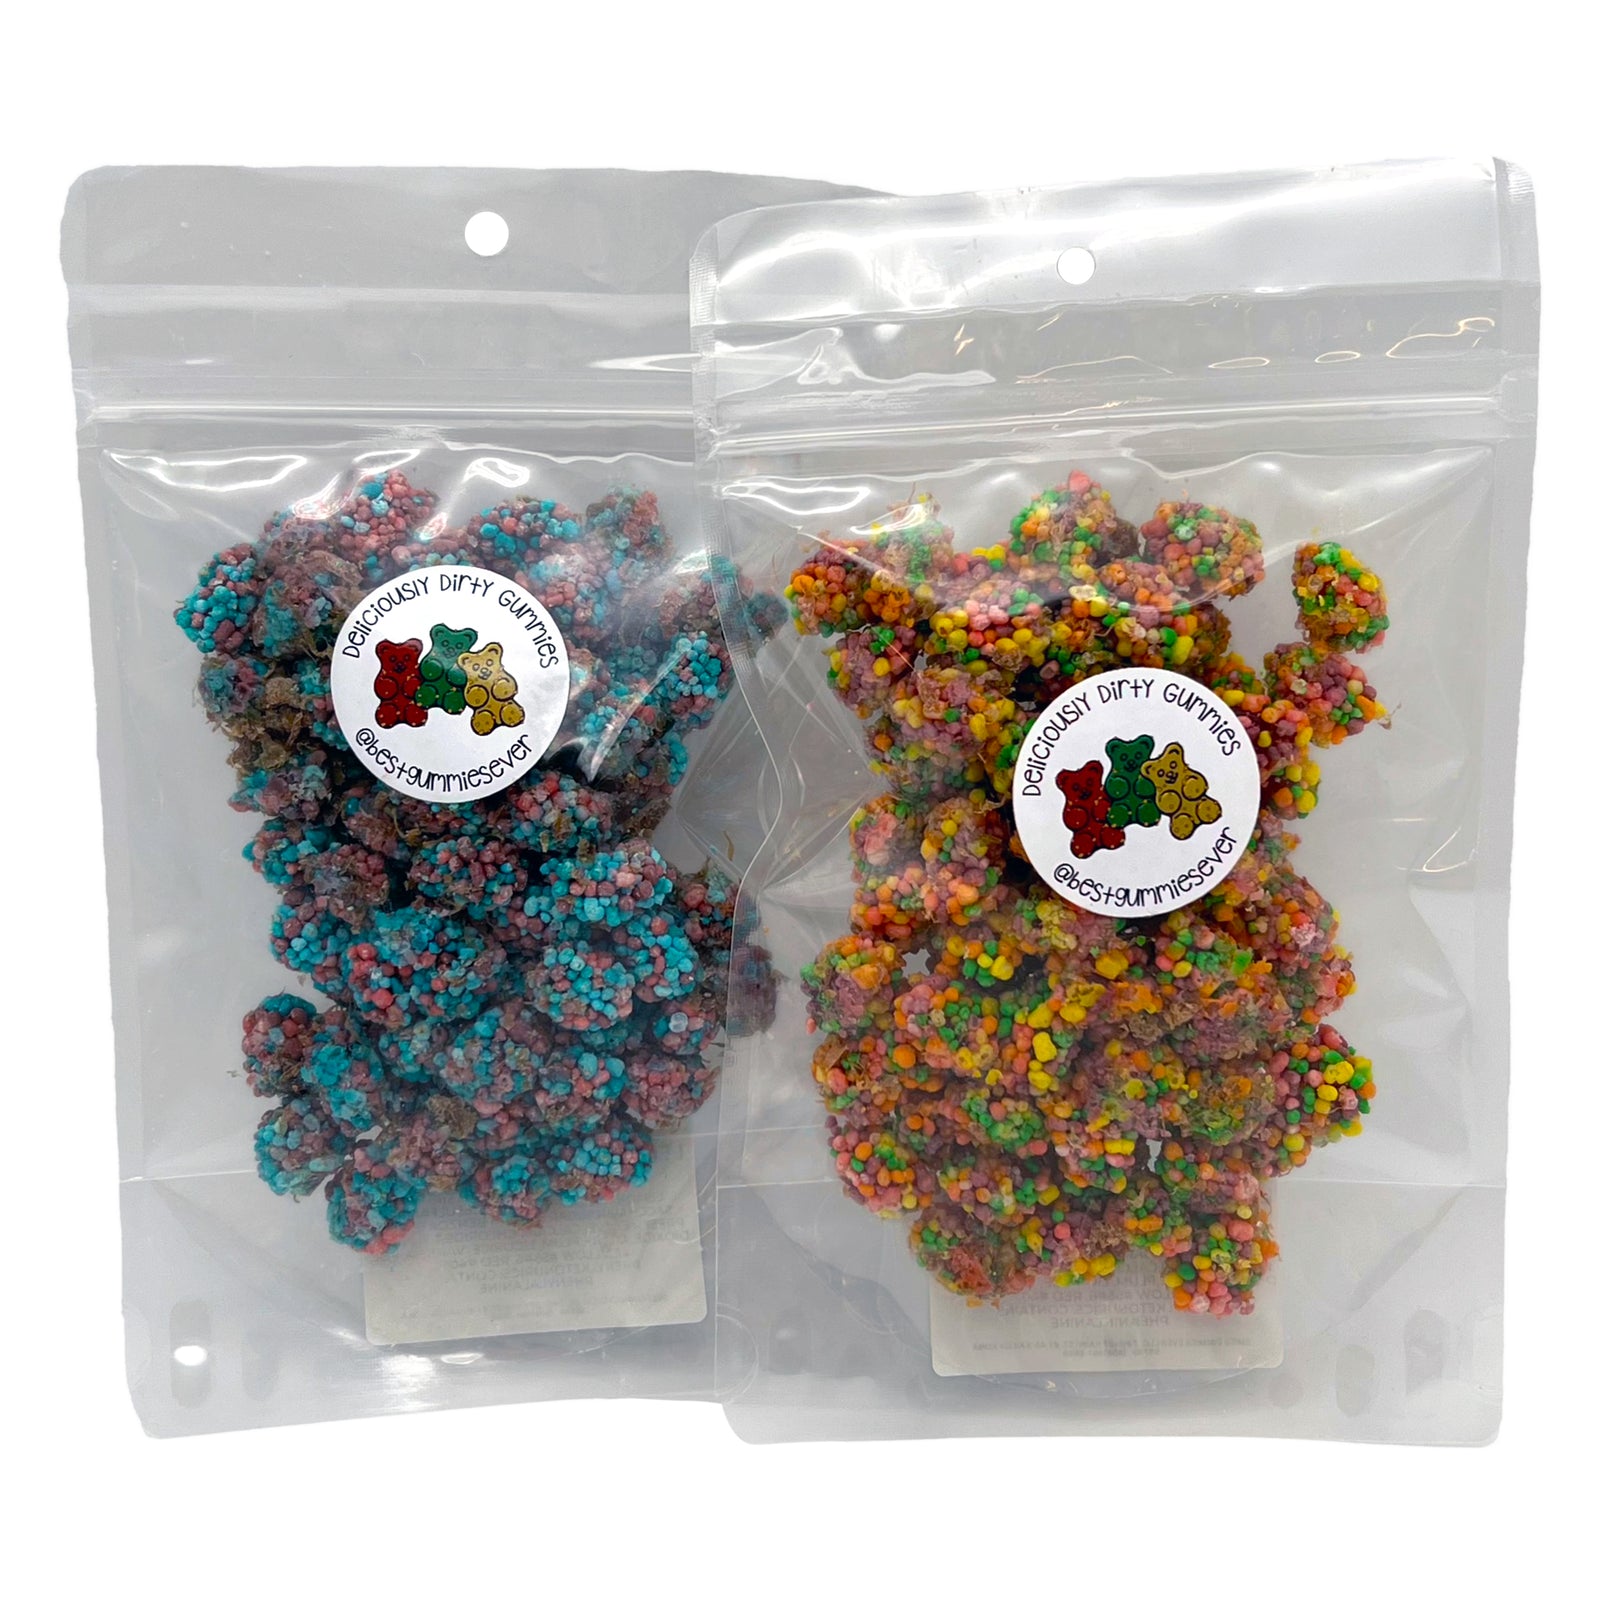 Pop-Up Mākeke - Best Gummies Ever - Nerd Gummy Clusters - Front View